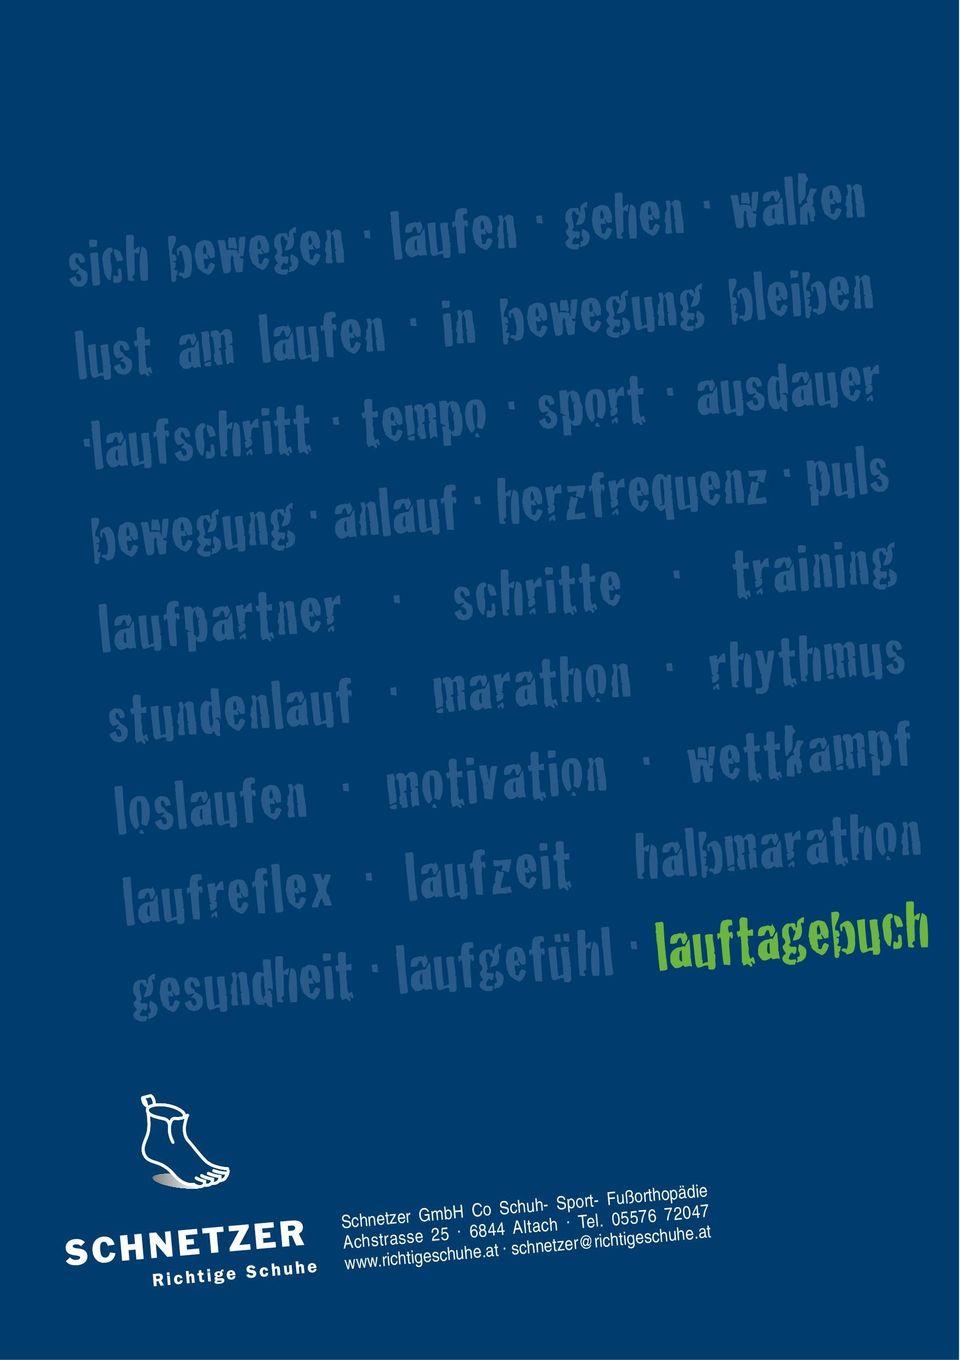 wettkampf laufreflex. laufzeit halbmarathon gesundheit. laufgefu.. hl.